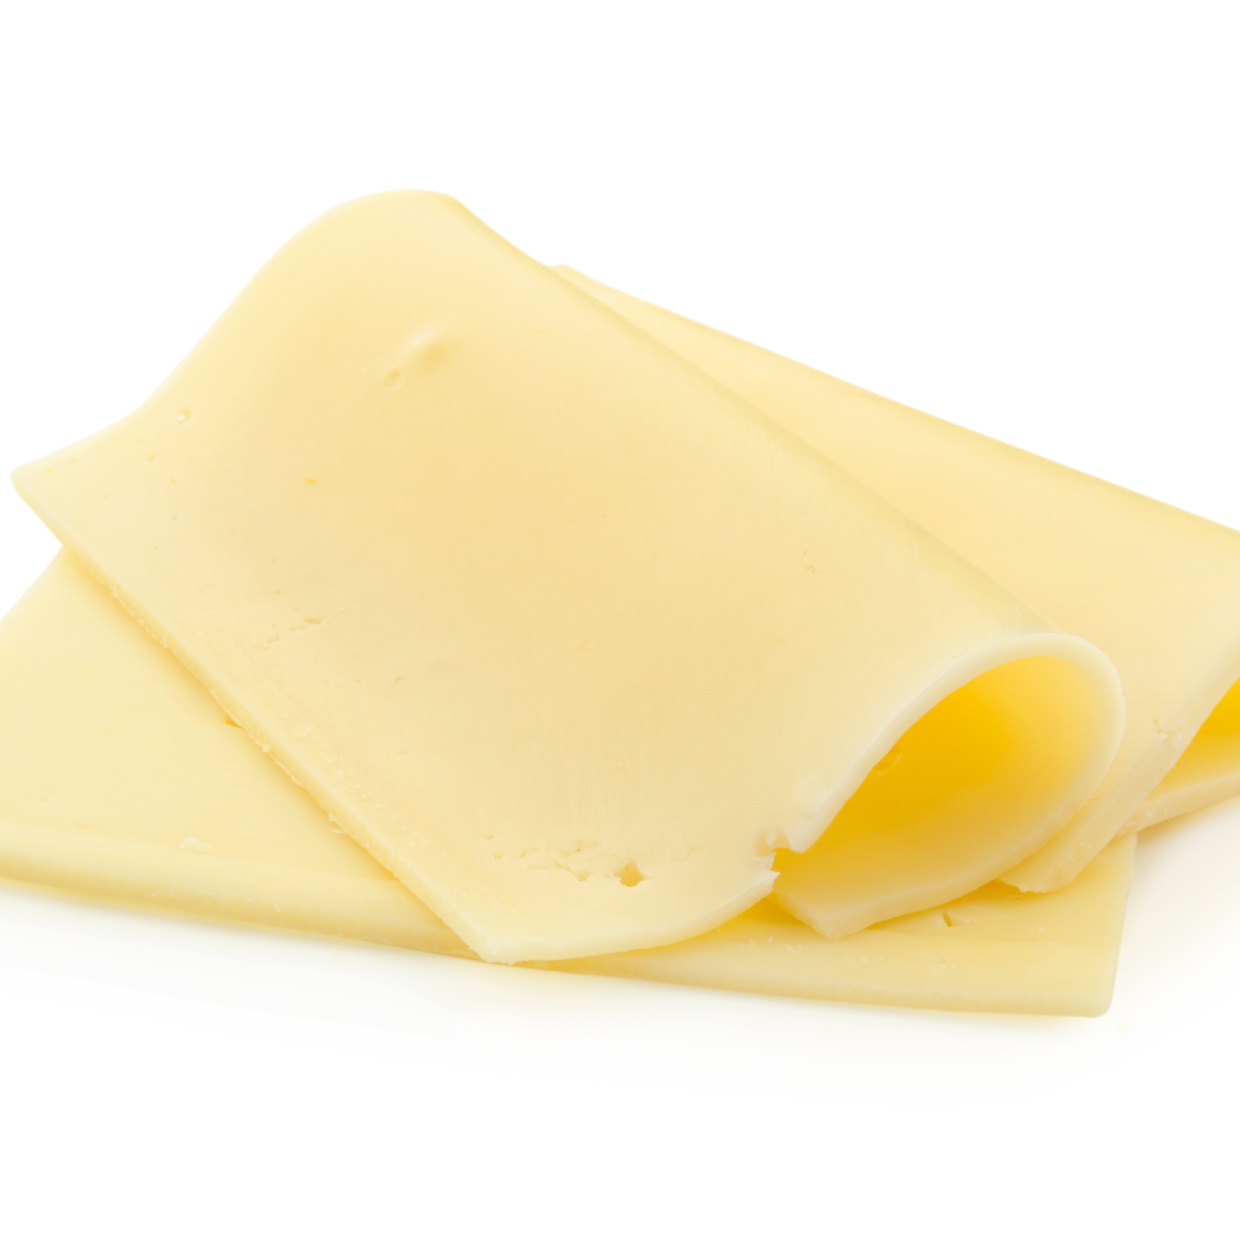  「チーズ」と一緒に食べると骨の健康に役立つ“意外な食材”とは【健康レシピ】 